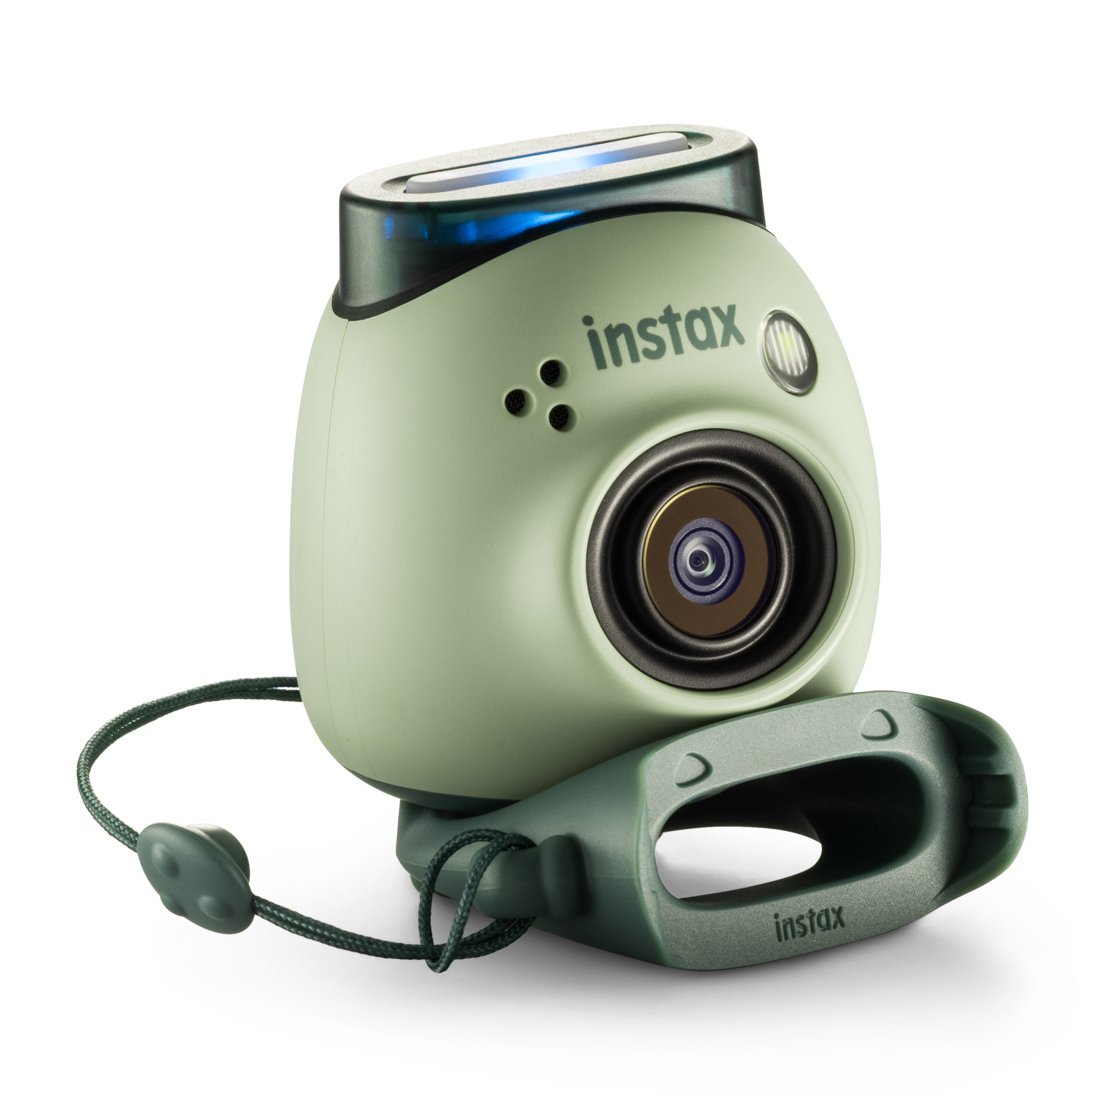 La cámara más 'cuqui' del mercado: Fujifilm lanza Instax Pal, que